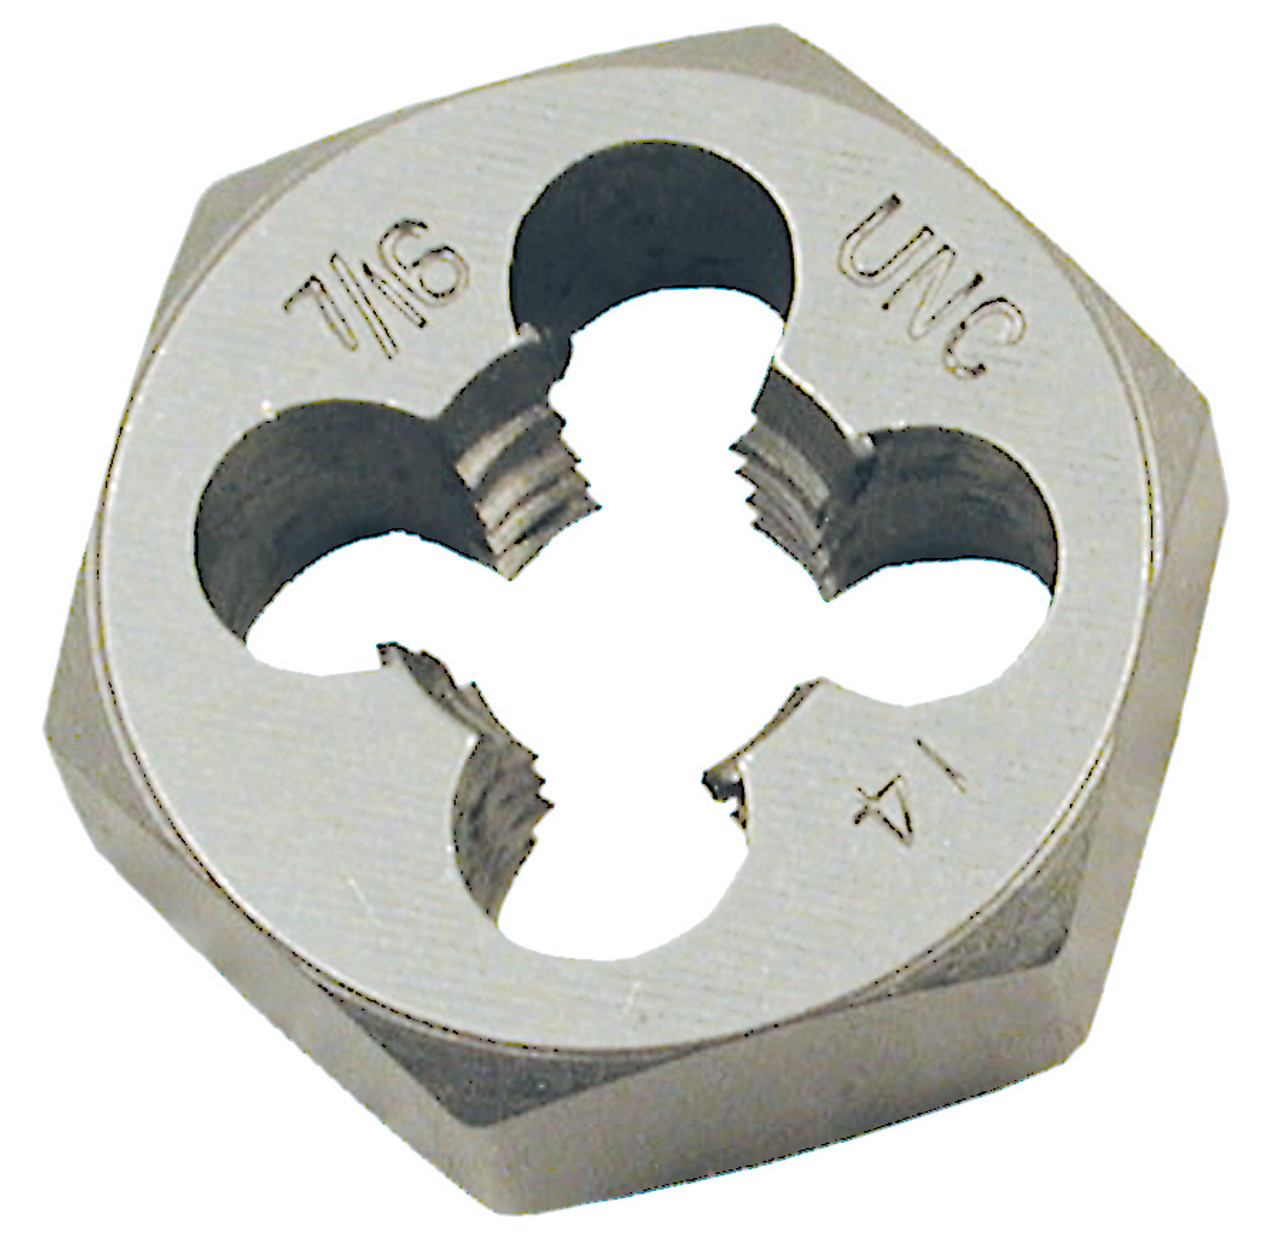 10mm-1.50 Coarse Alloy Steel Metric Hex Die (1" Hex) 530873